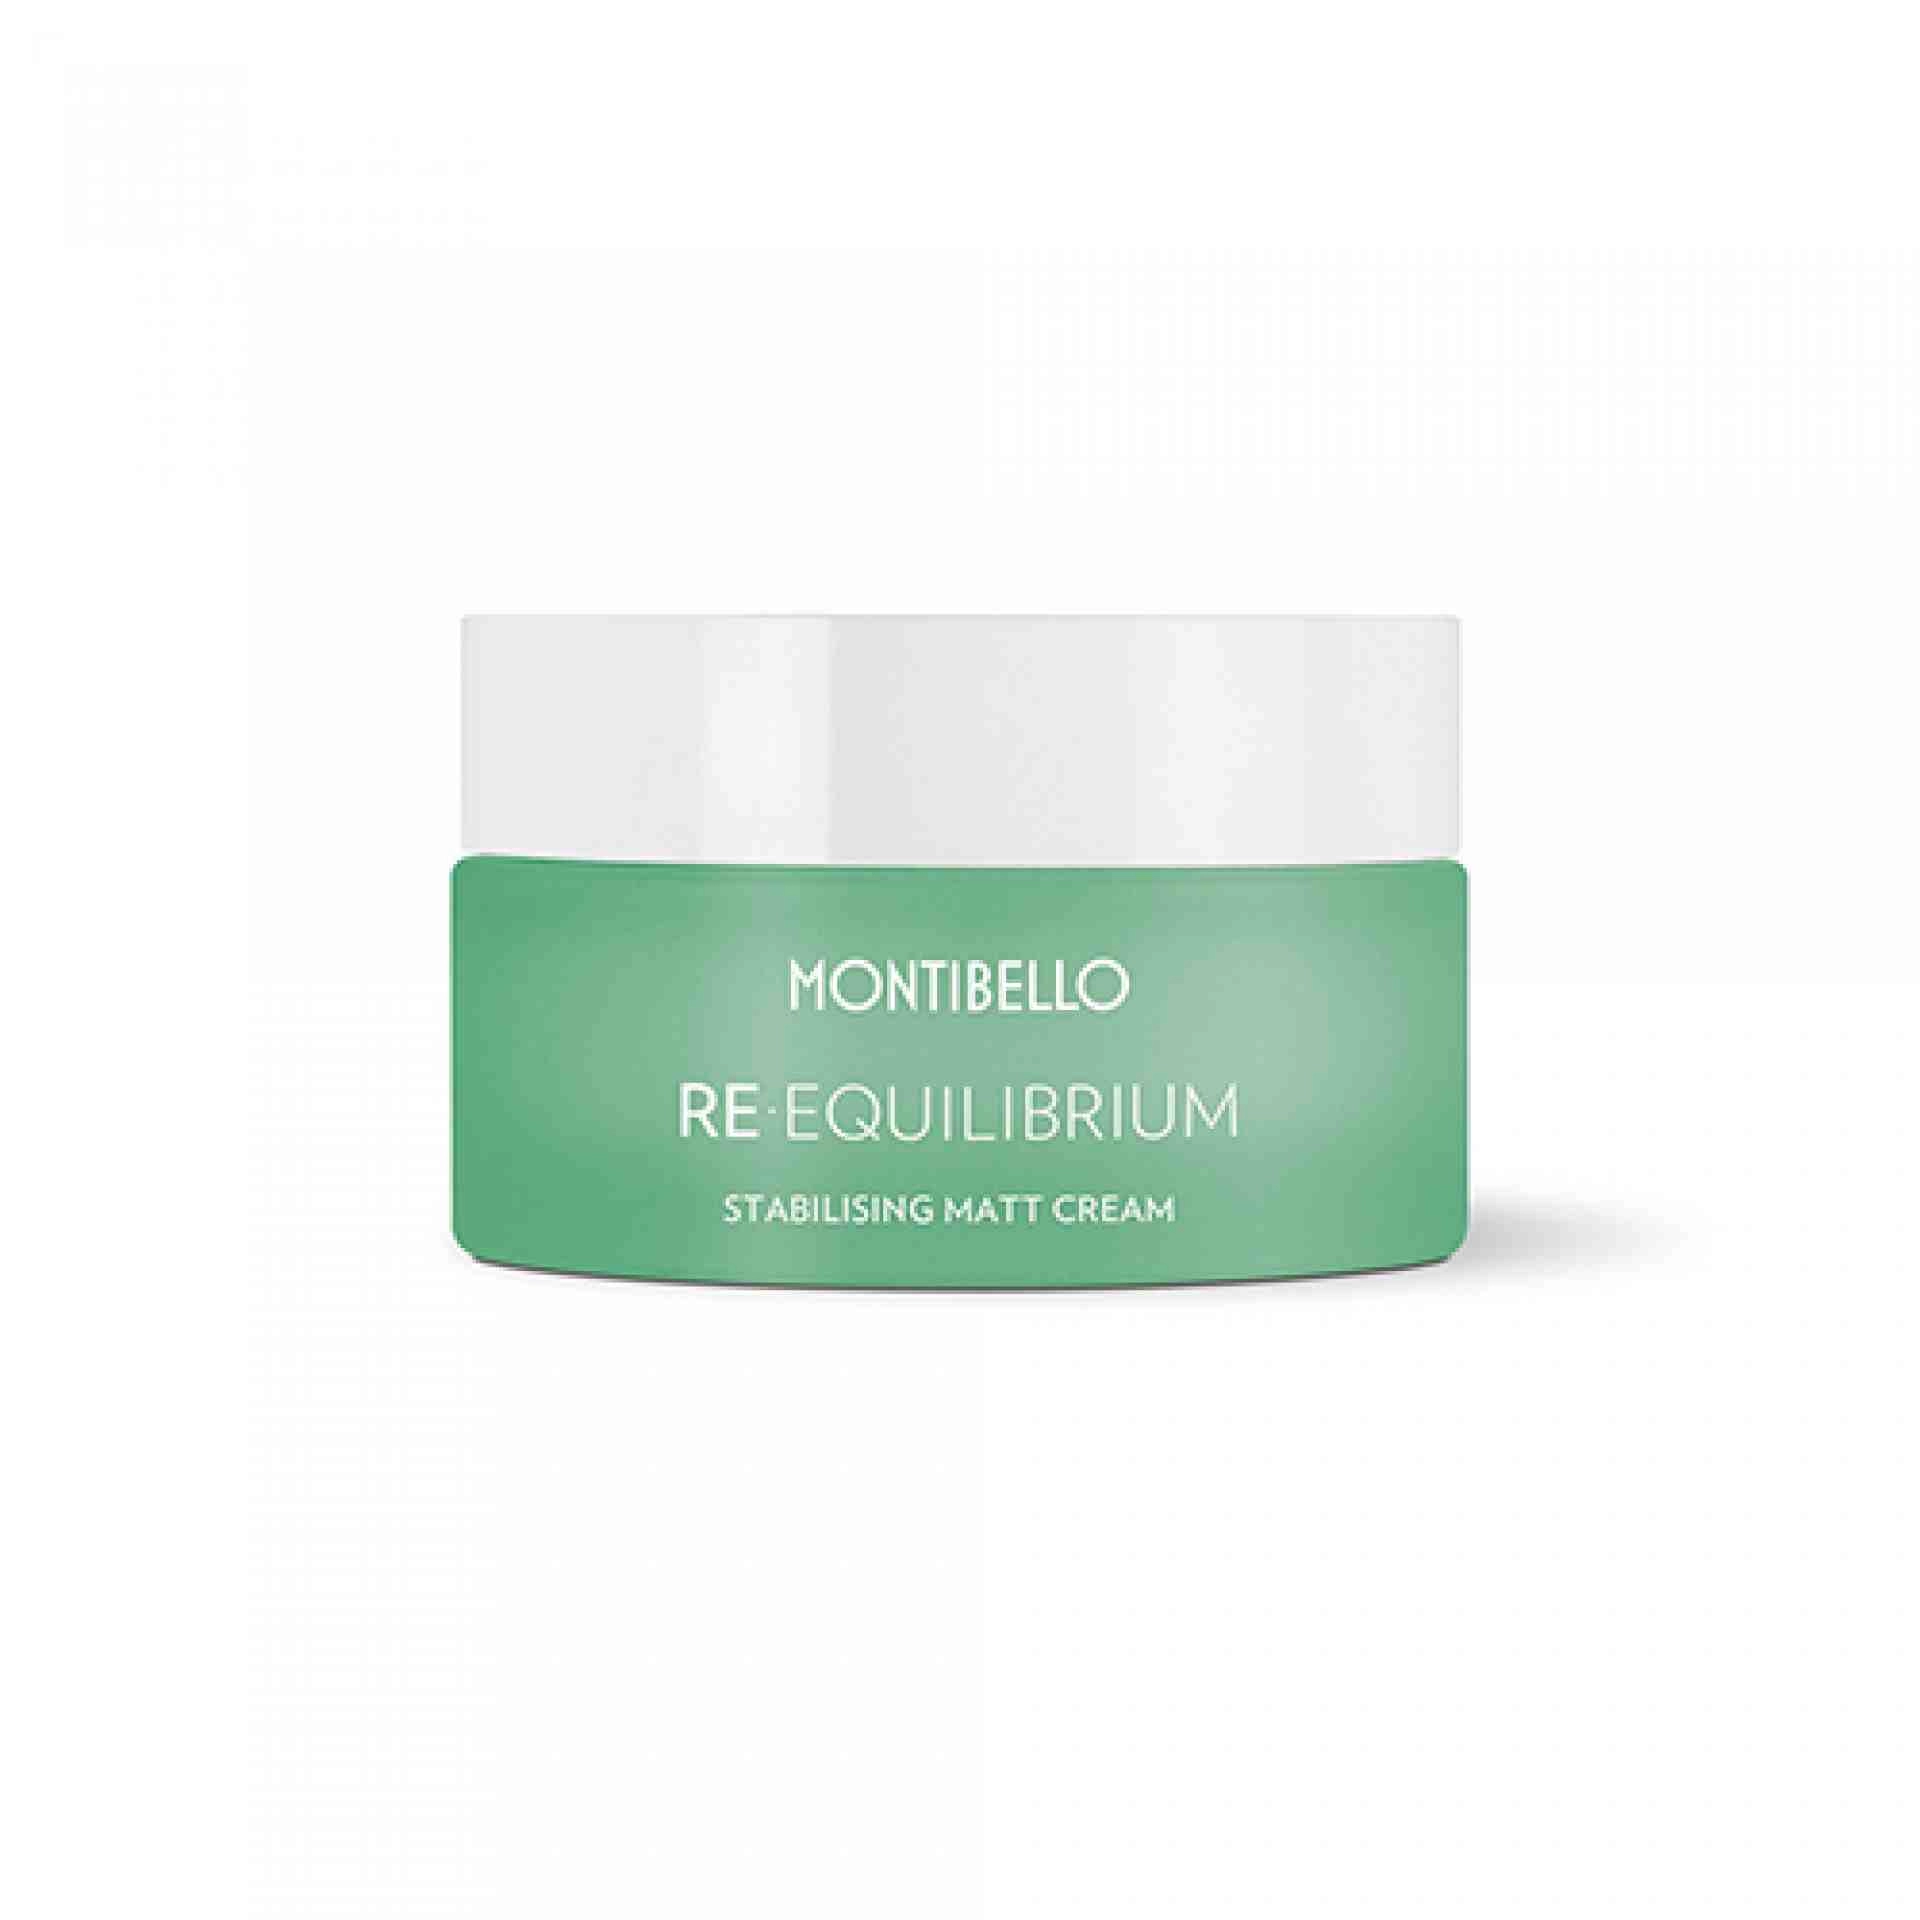 Stabilising matt cream | Crema Reguladora Hidratante 50ml - Re-Equilibrium - Montibello ®